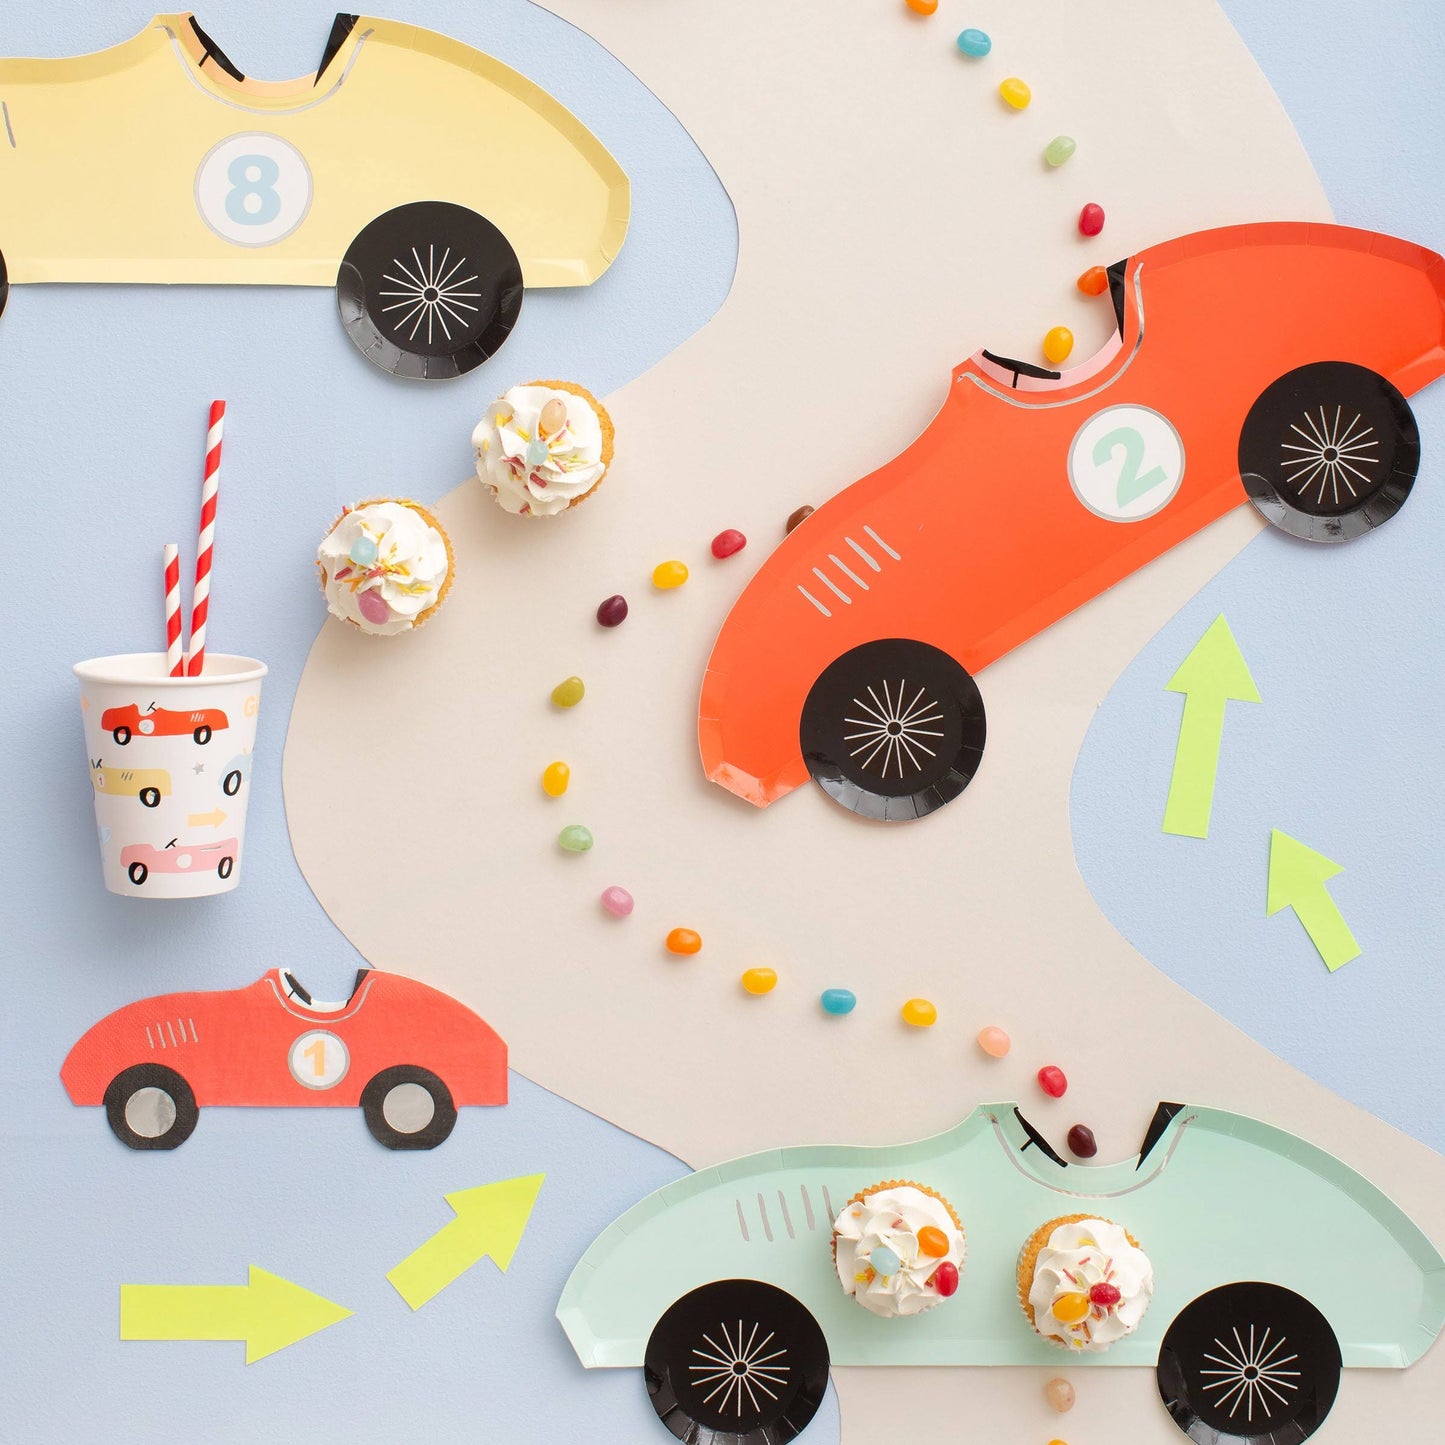 race car themed tableware for children's birthday